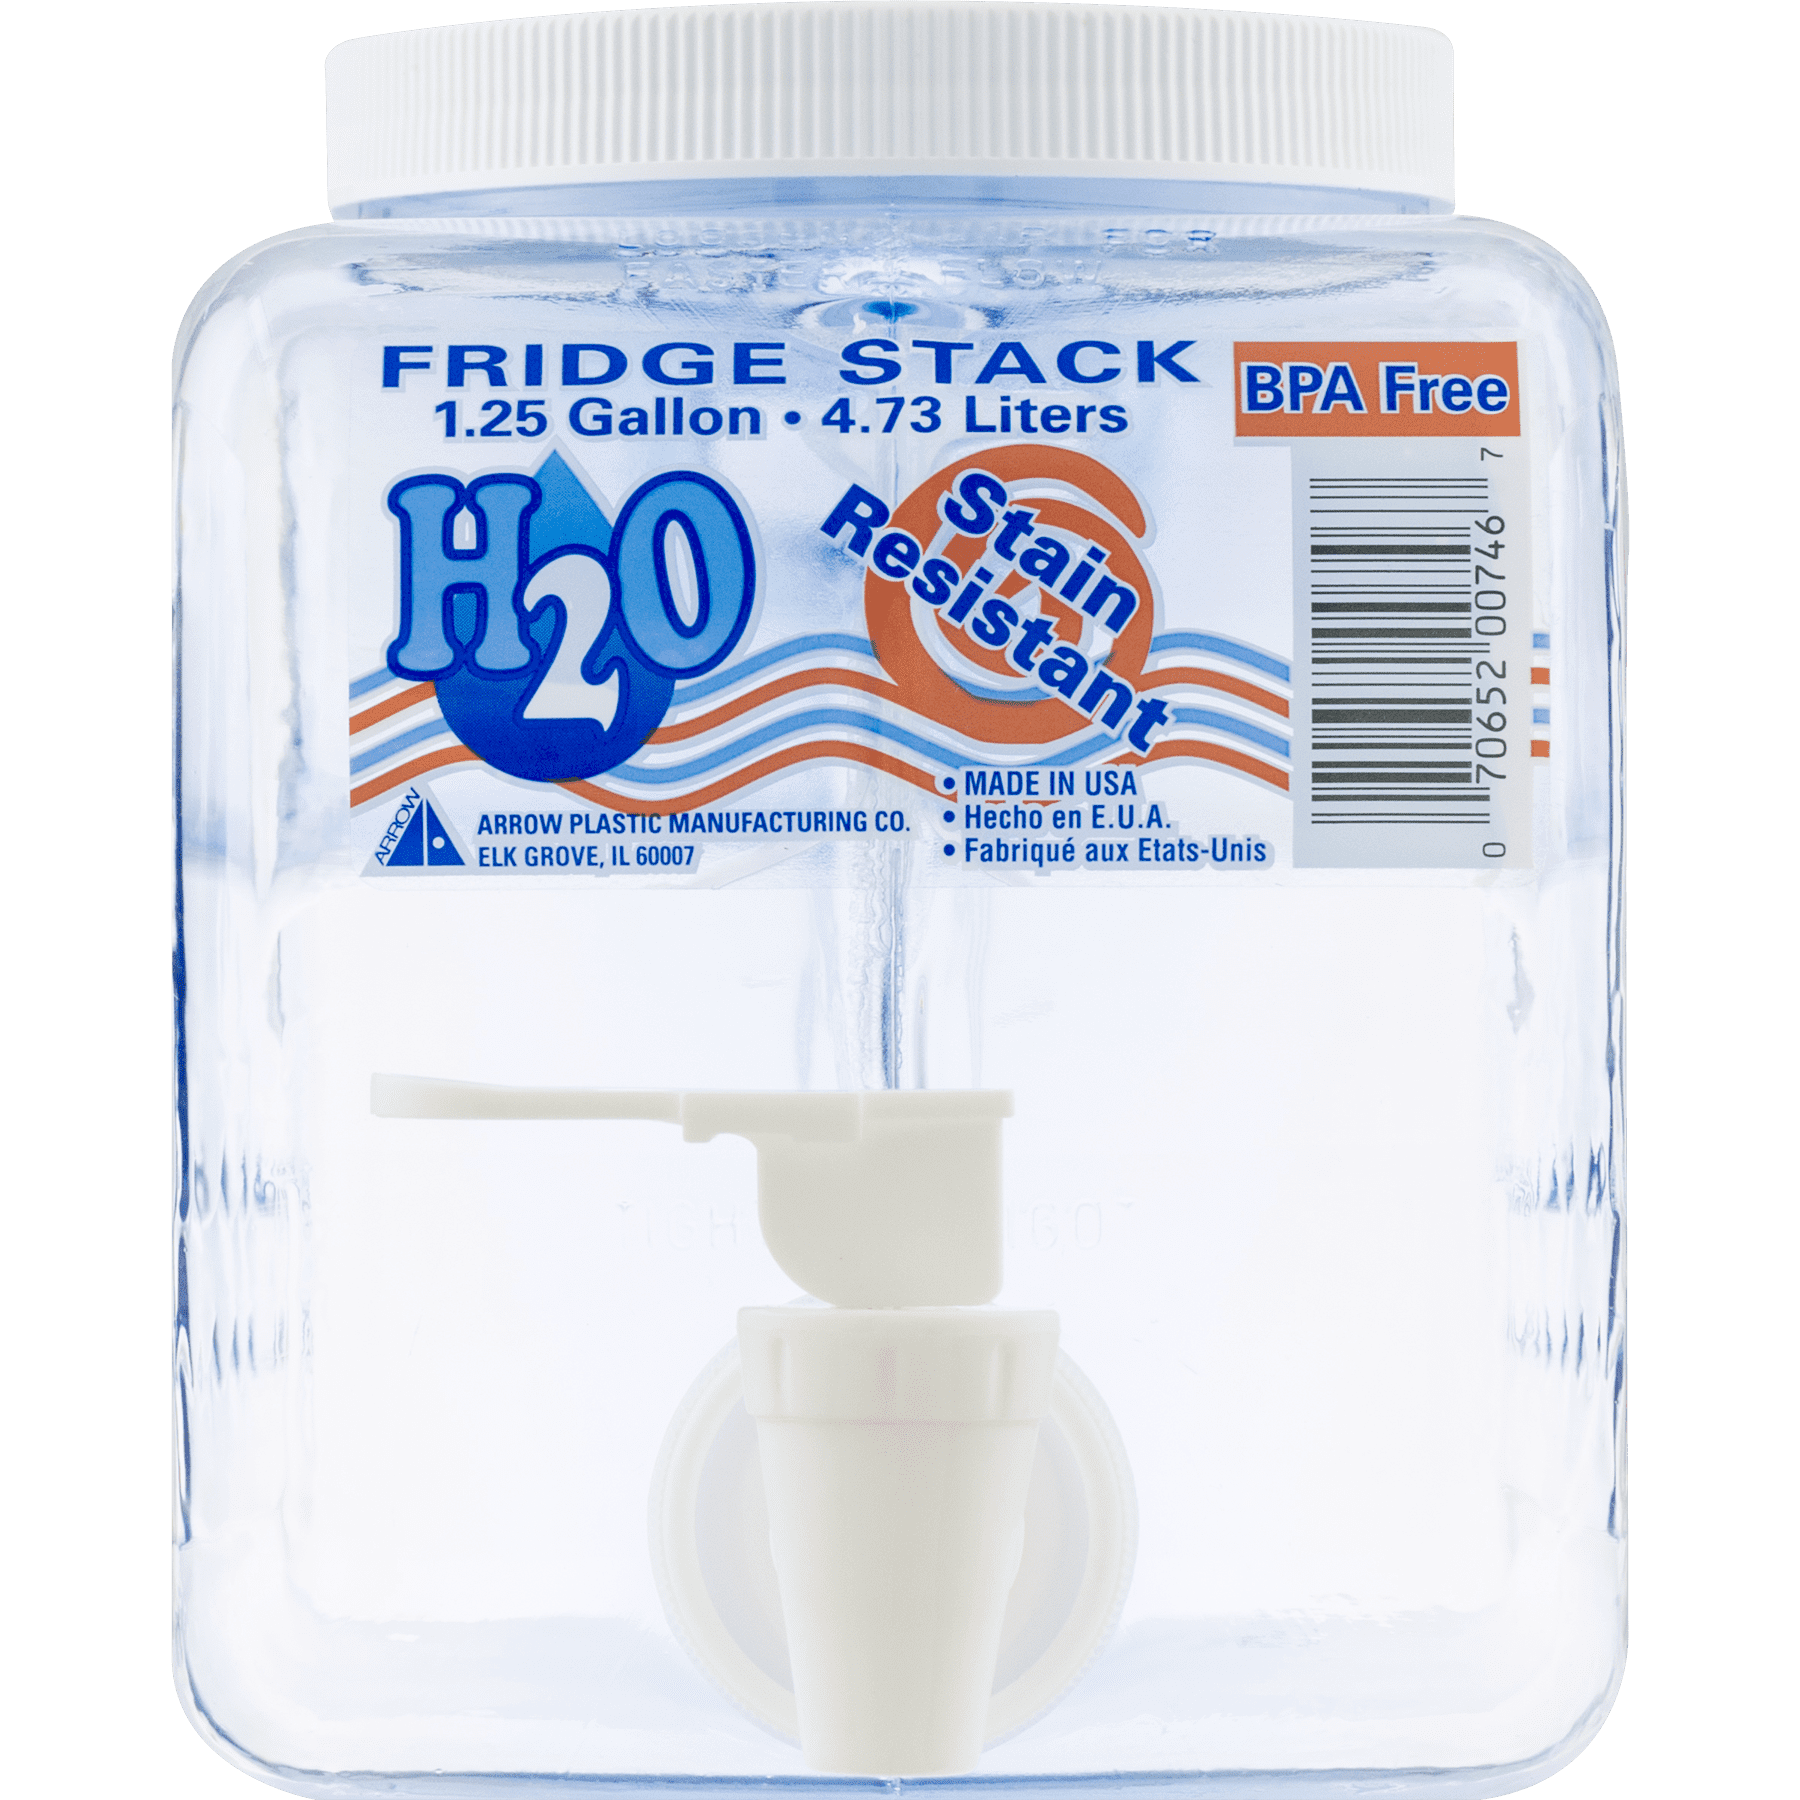 1.25 Gallon Fridge Stack Beverage Dispenser